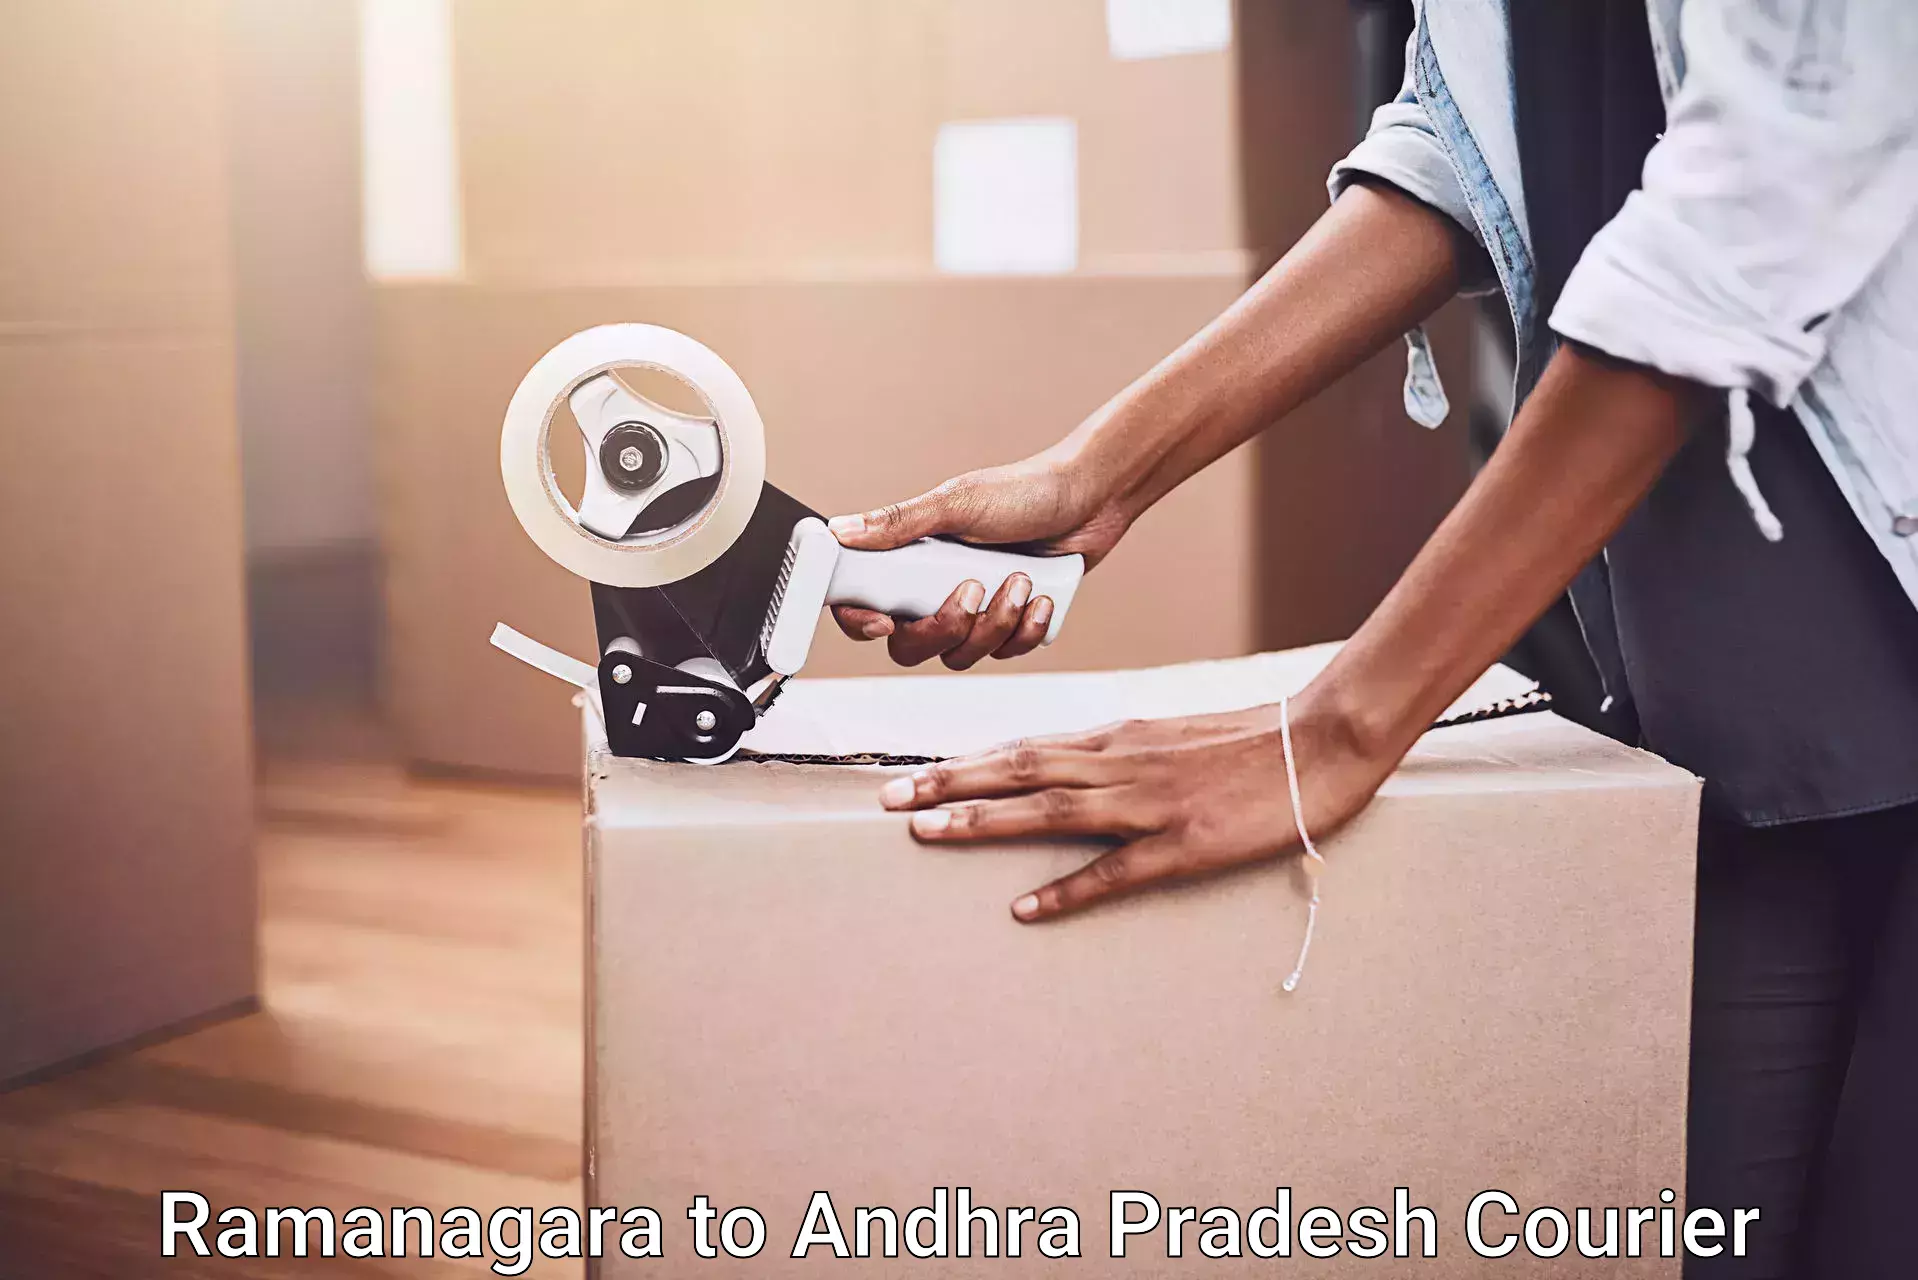 Furniture moving services in Ramanagara to Andhra Pradesh